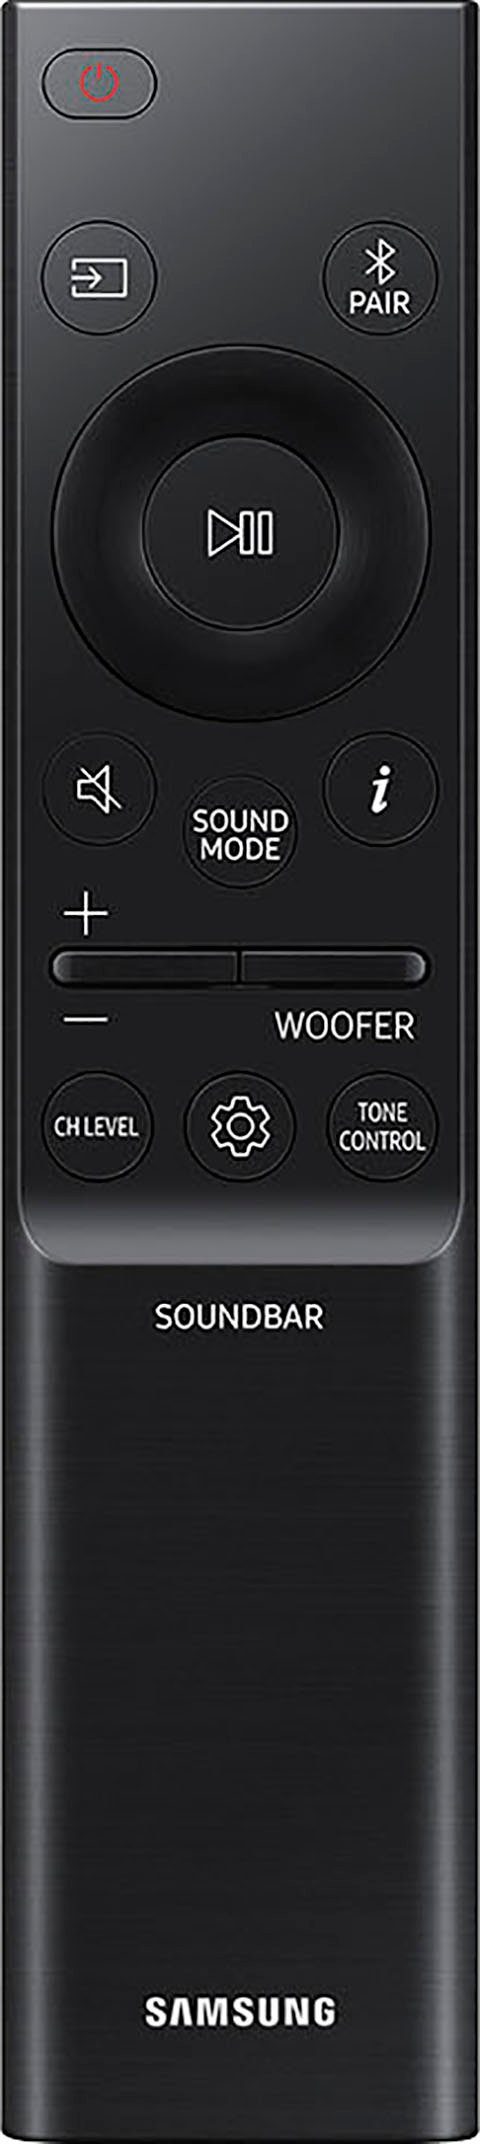 Soundbar Wert HW-Q995GC (656 im 39,99€; Mon.Garantie Gratis Rücklautsprecher) von Samsung 4.0.2 W, dazu:48